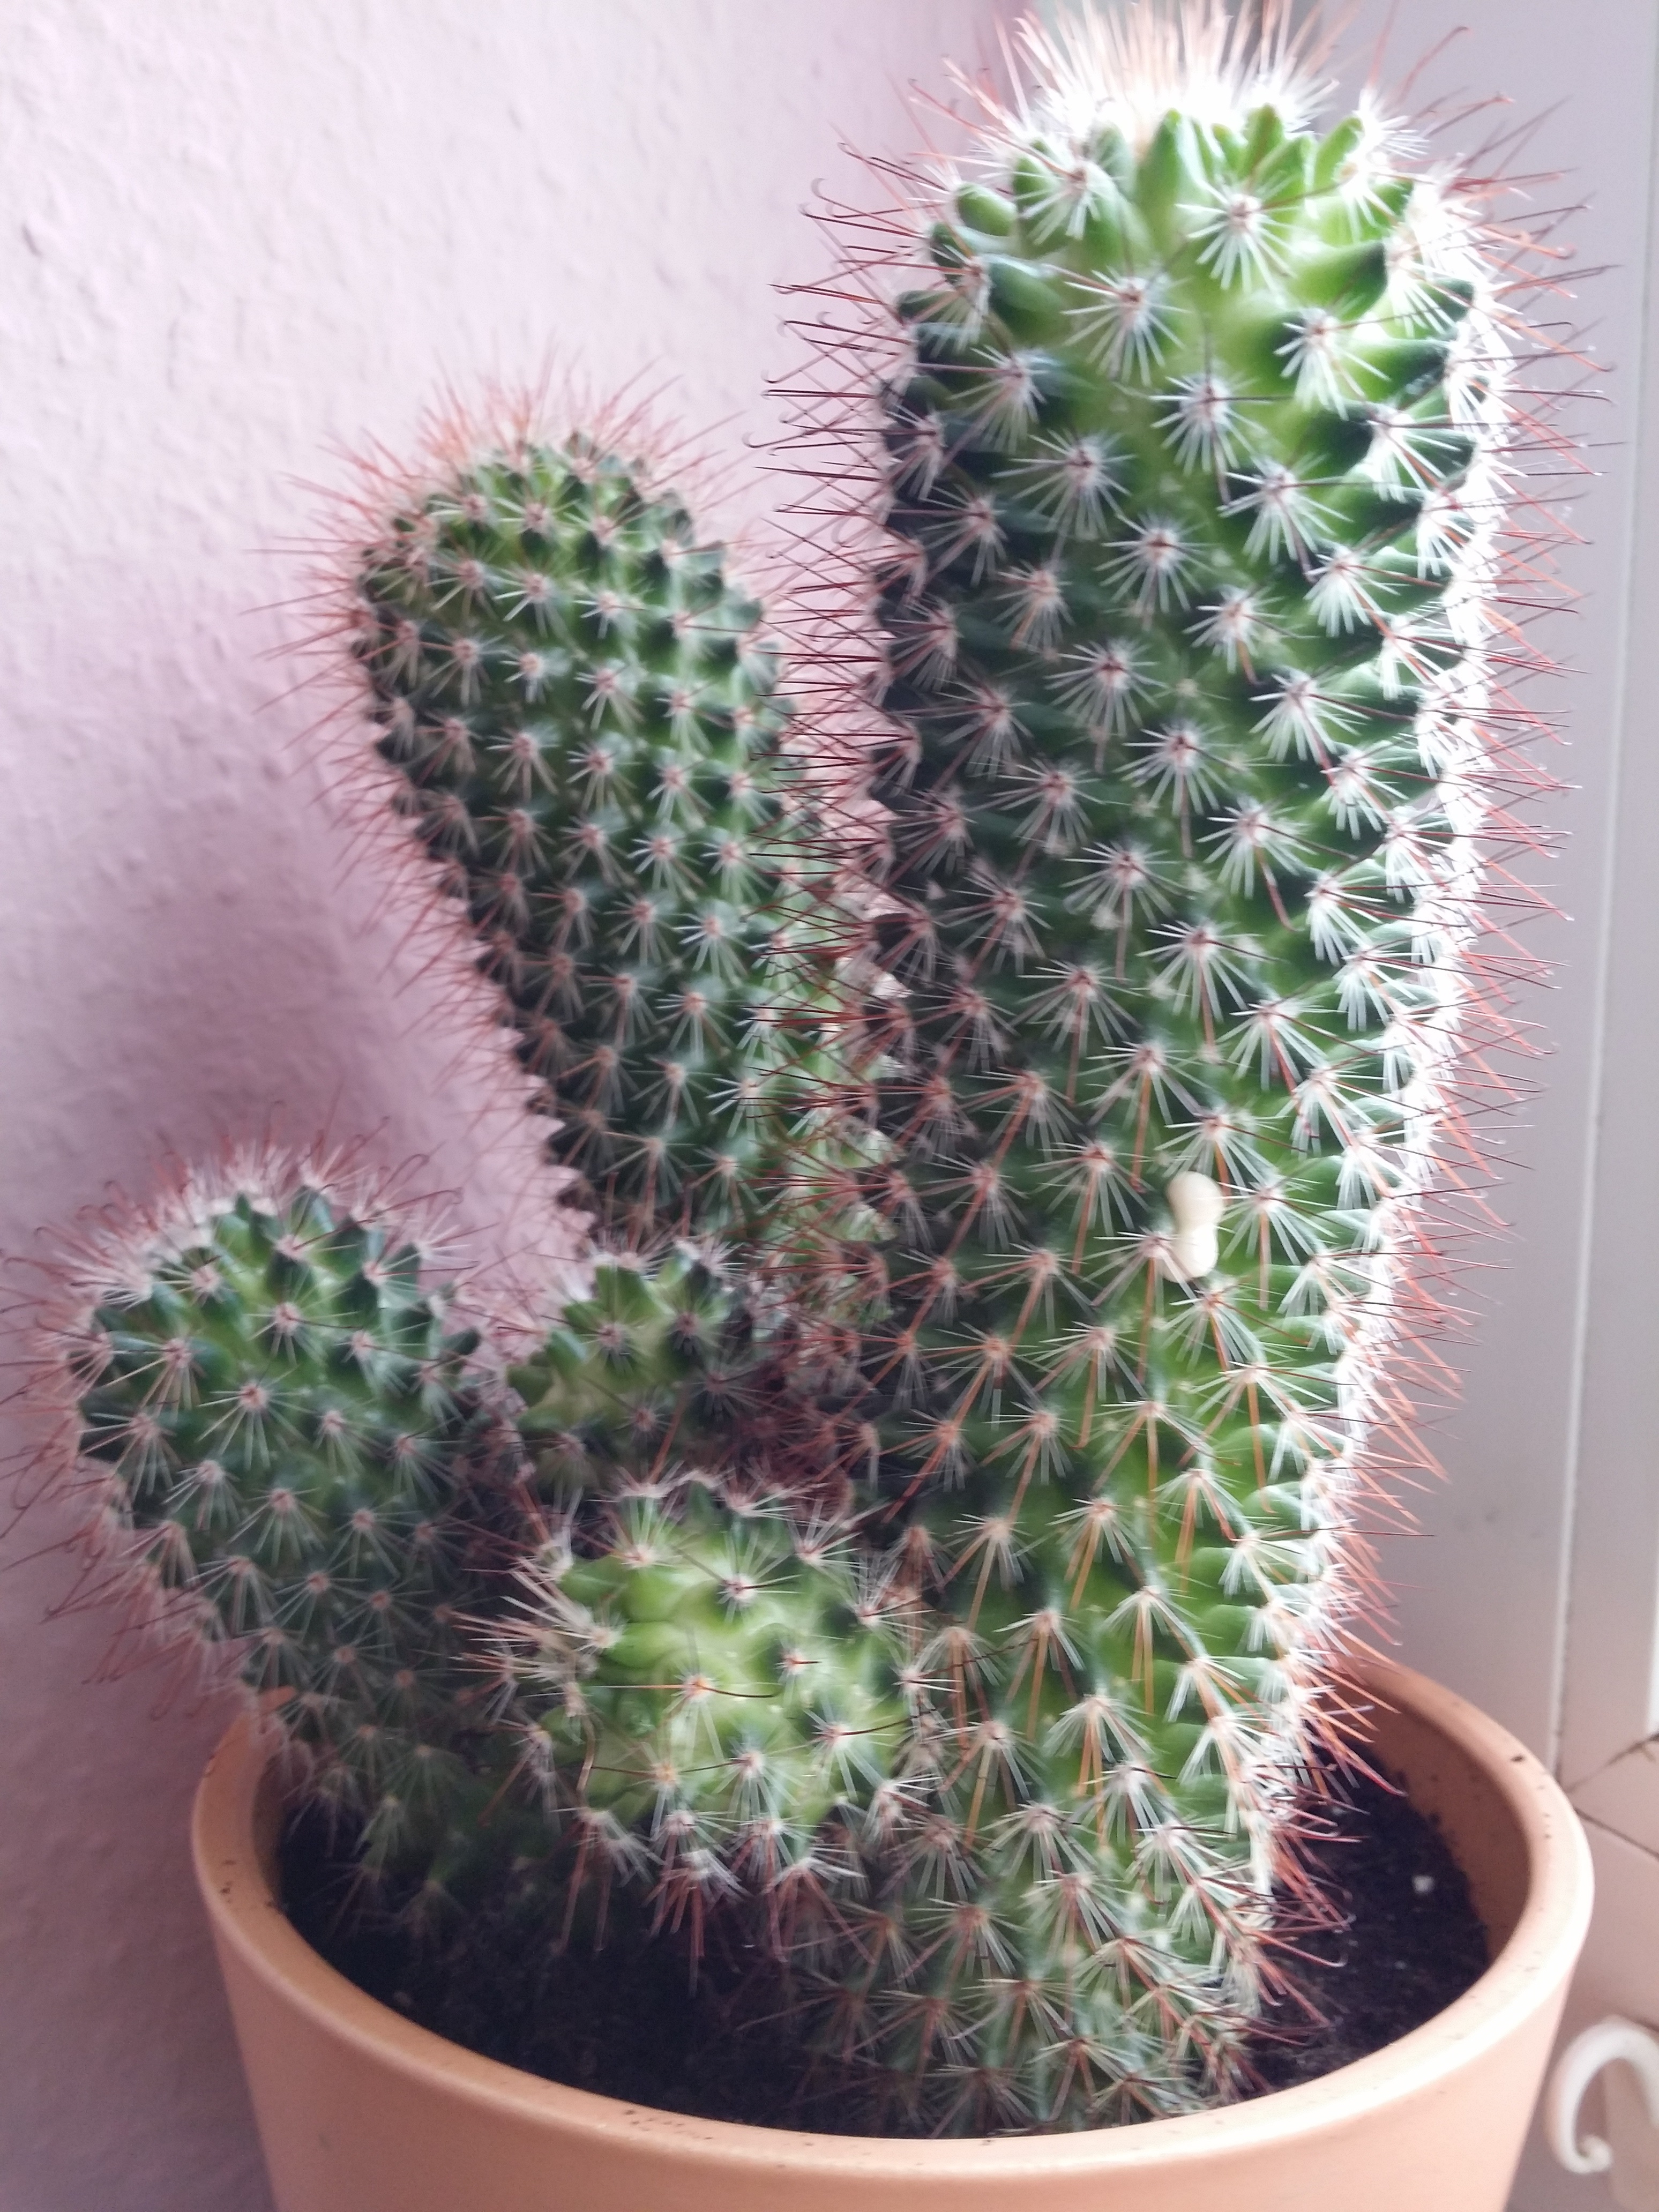 kaktus-blutet-wei-und-um-was-f-r-ein-kaktus-handelt-es-sich-pflanzen